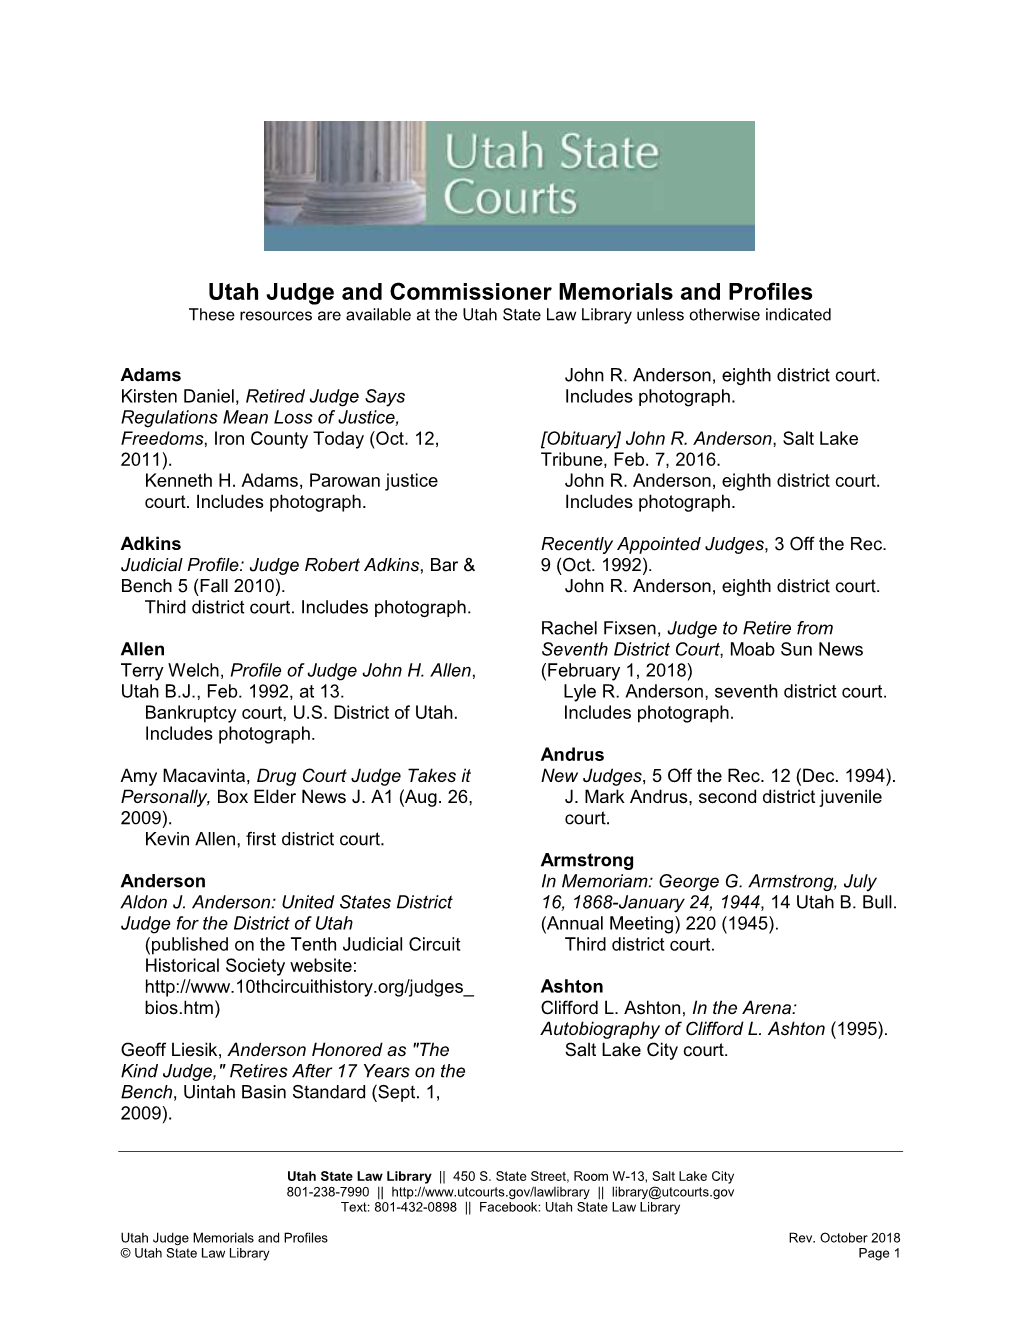 Utah Judge Memorials & Profiles